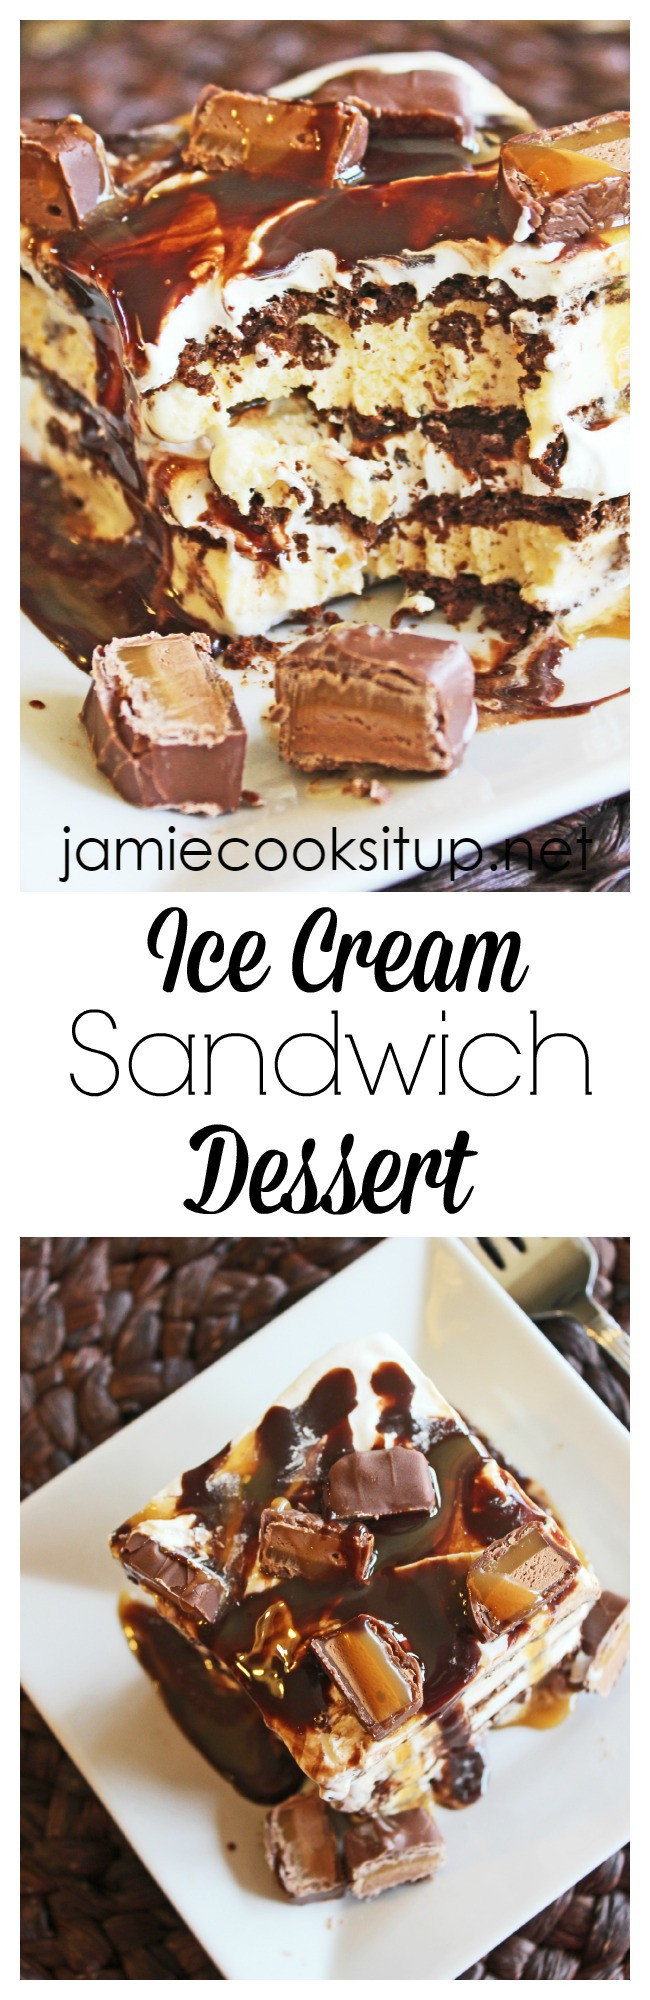 Ice Cream Sandwich Desserts Recipe
 Ice Cream Sandwich Dessert